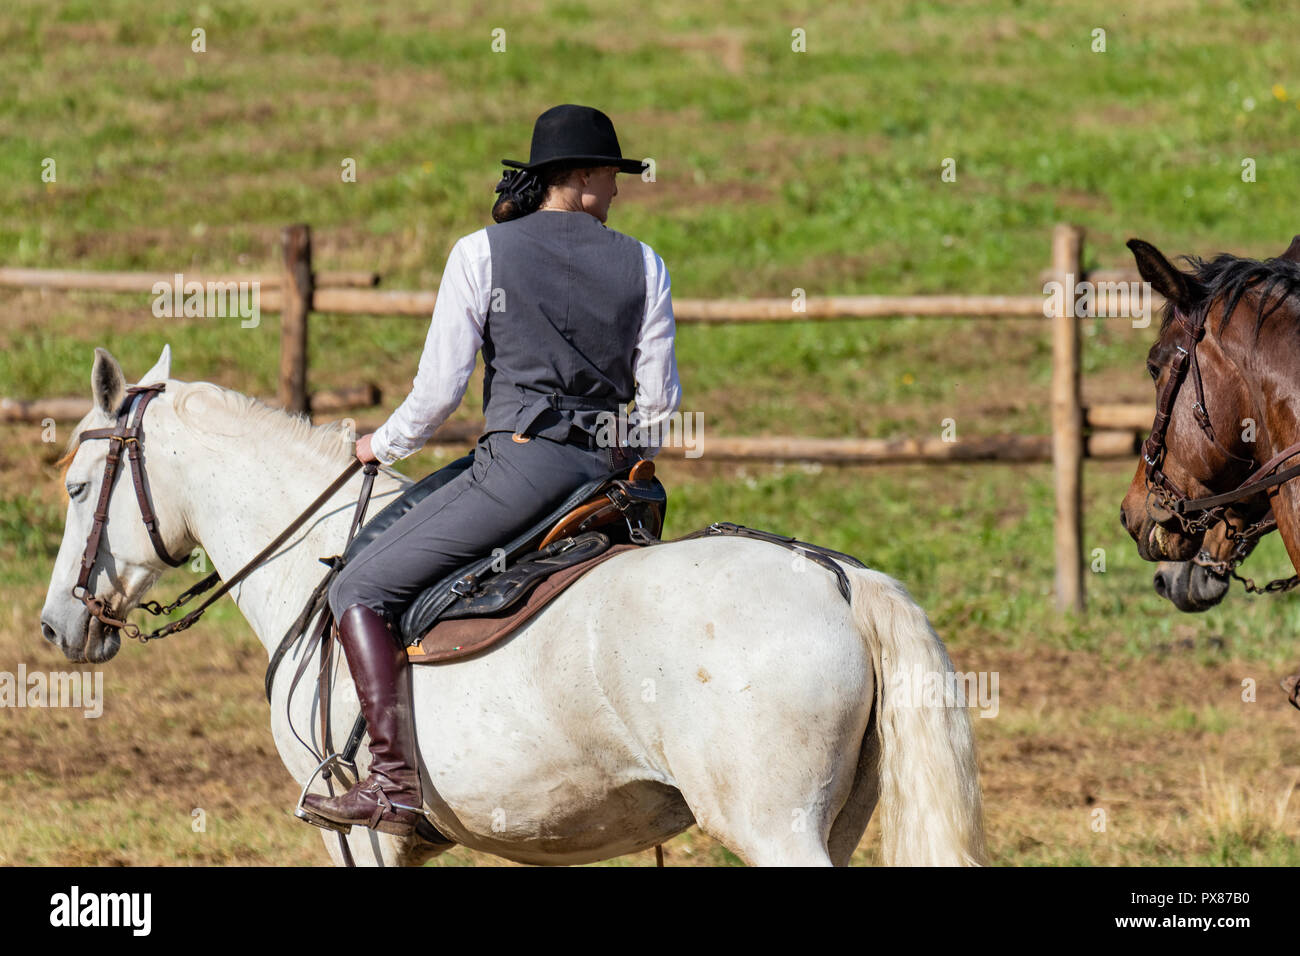 Cavallo femmina rider, leader di un partito di caccia durante un tradizionale paese equestre show. Sport all'aperto, gli amanti degli animali, giornata soleggiata, illuminazione naturale. Foto Stock